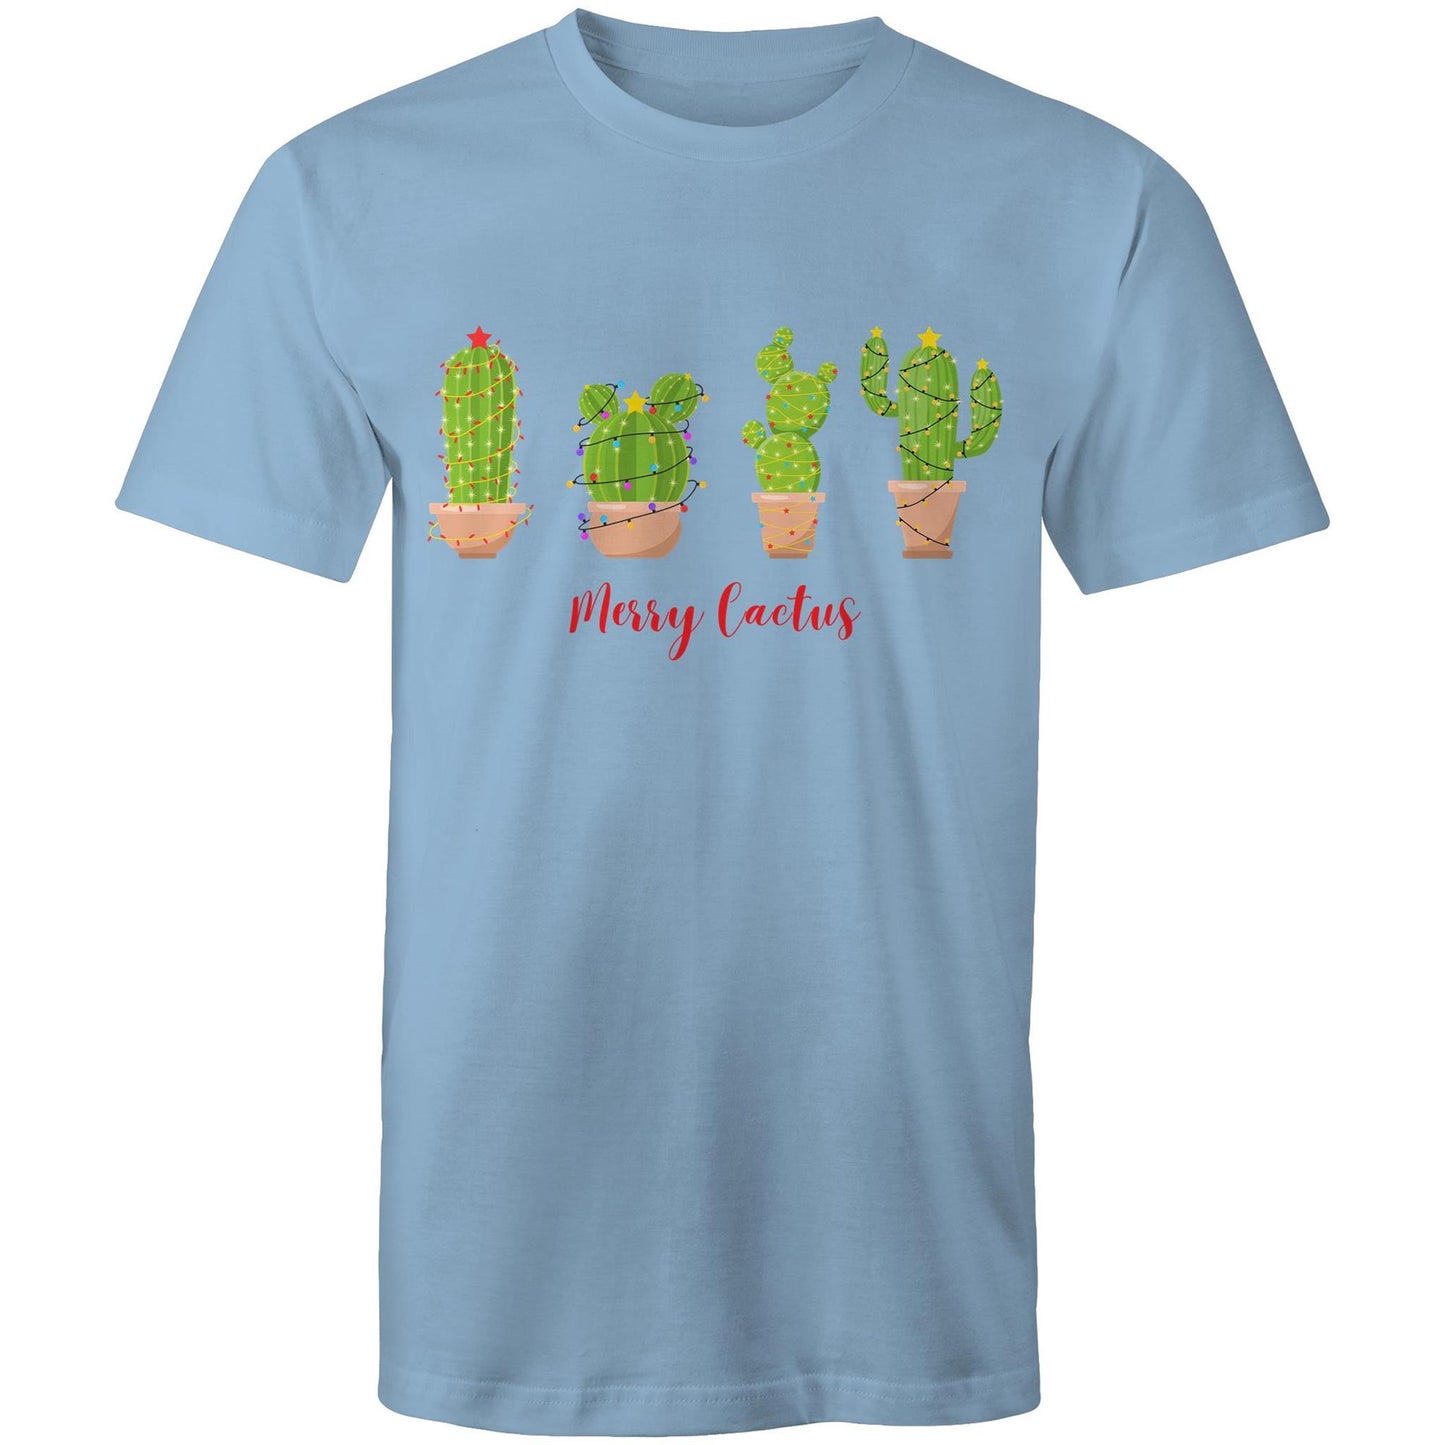 Merry Cactus - Mens T-Shirt Carolina Blue Christmas Mens T-shirt Merry Christmas